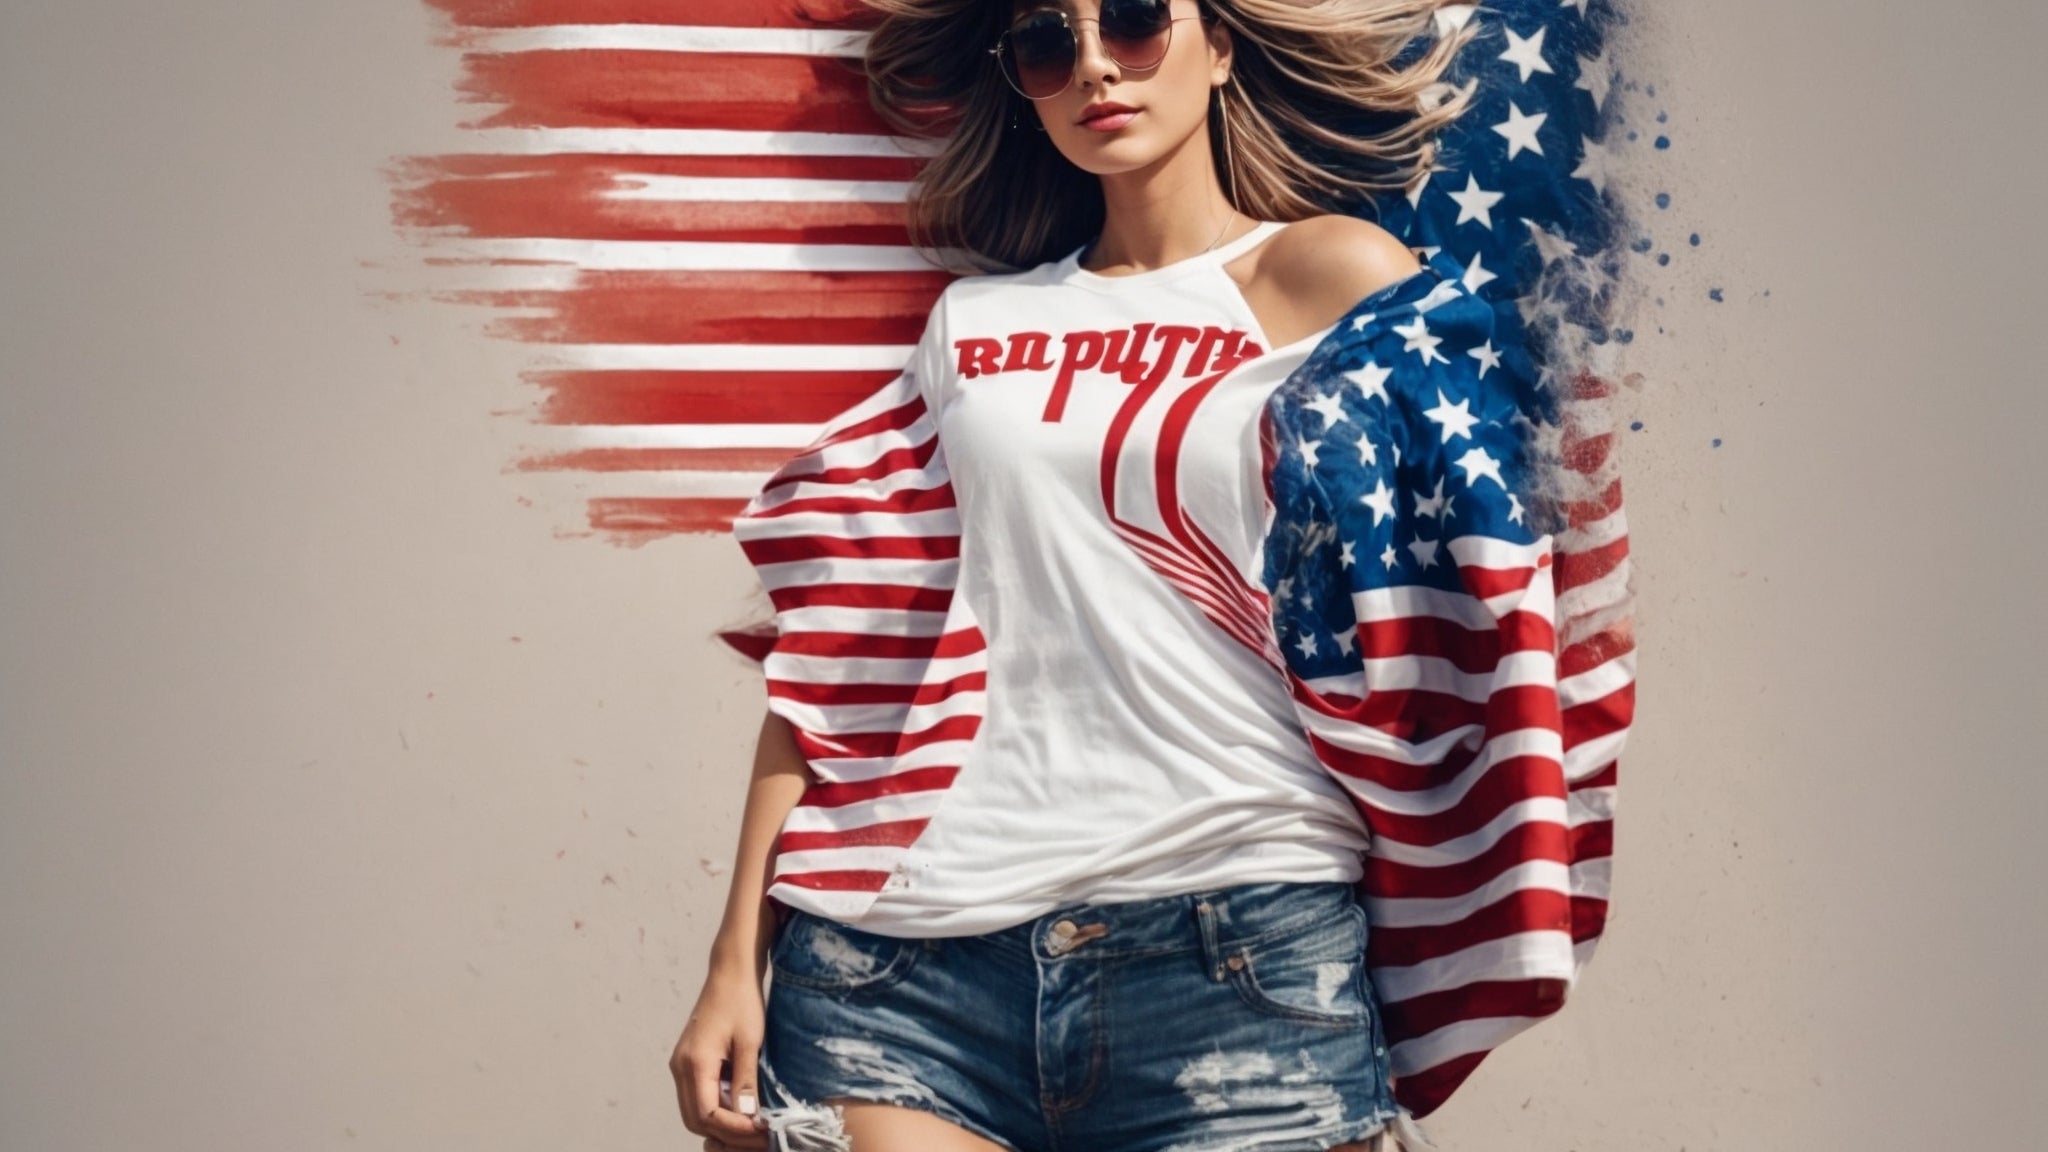 Udtryk din republikanske patriotisme med stilfulde t-shirts til Trump-tilhængere